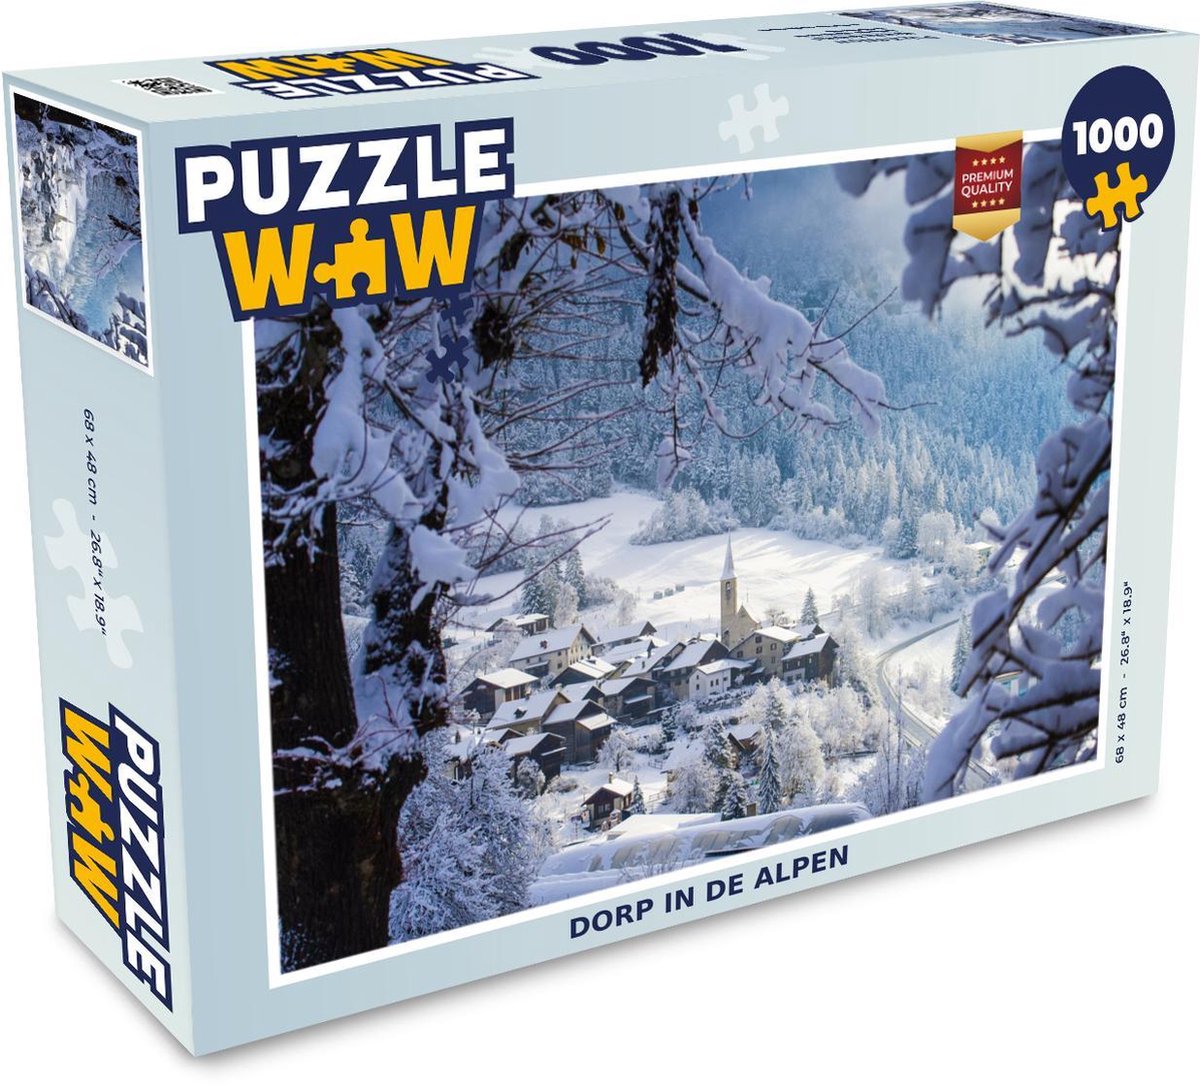 Afbeelding van product Puzzel 1000 stukjes volwassenen De Alpen 1000 stukjes - Dorp in de Alpen - PuzzleWow heeft +100000 puzzels